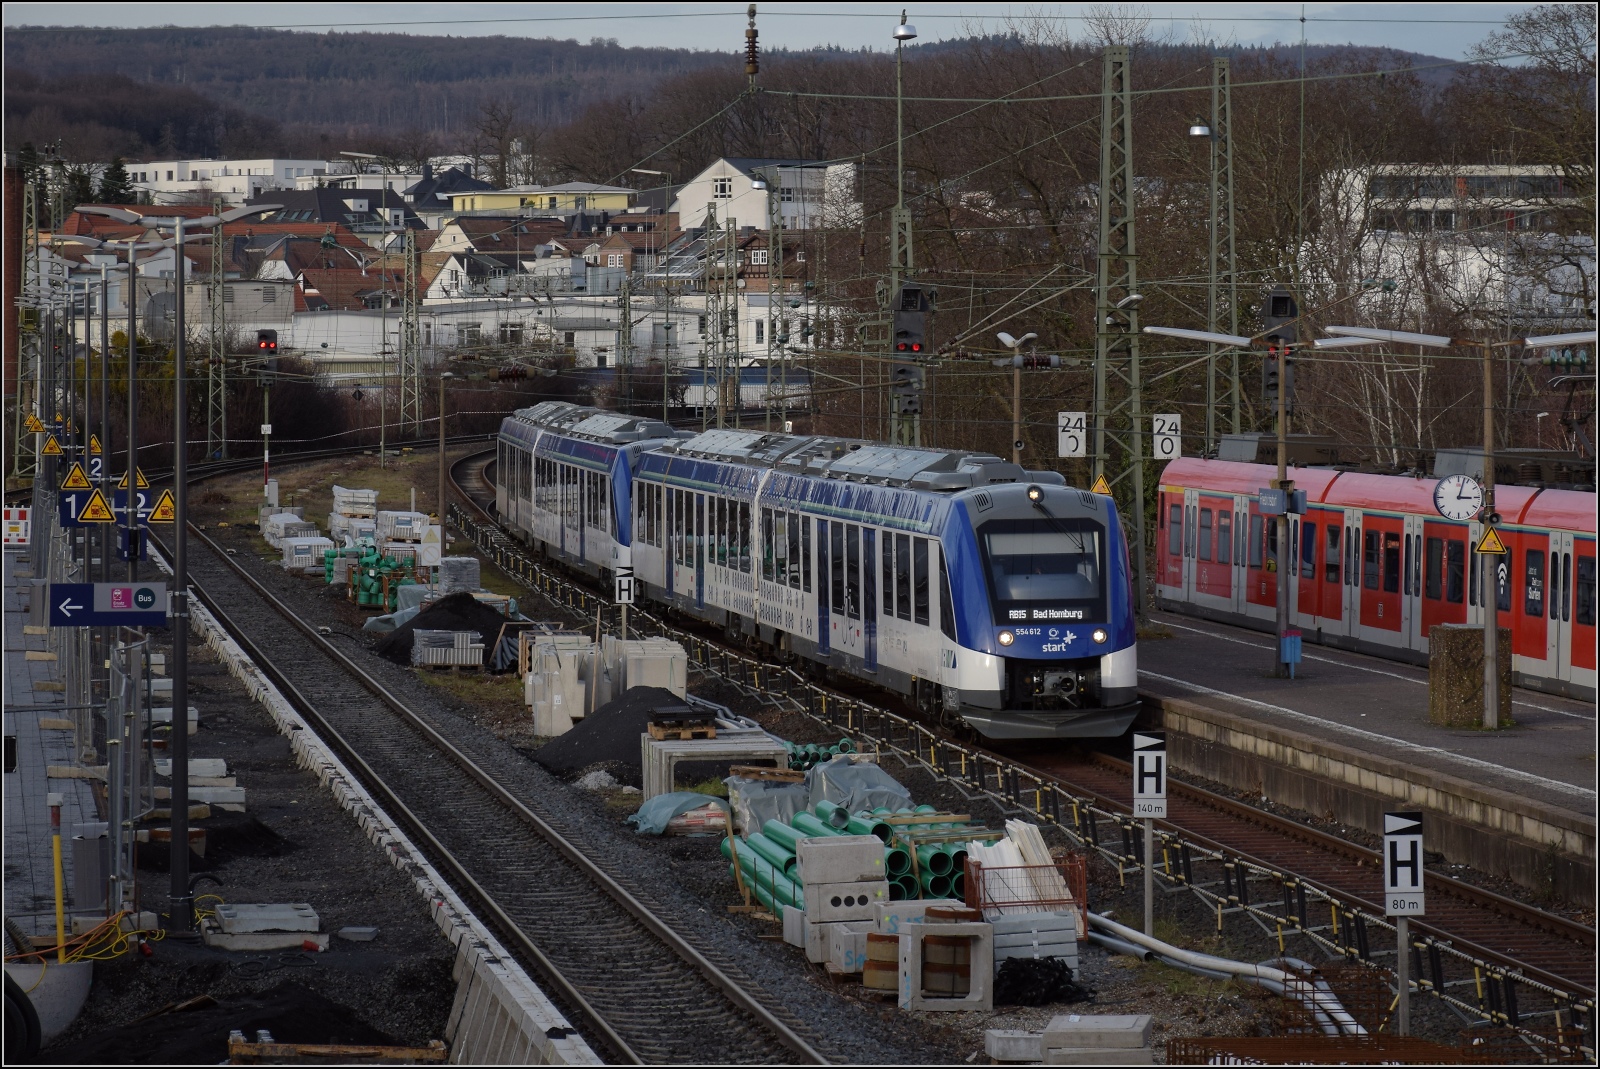 Momentan mehr Vaporware als Hardware auf Gleisen ist der iLint. 

554 112 und 554 111 als RB 15 nach -oh- jetzt doch Bad Homburg fährt in Friedrichsdorf ein. Dezember 2022.